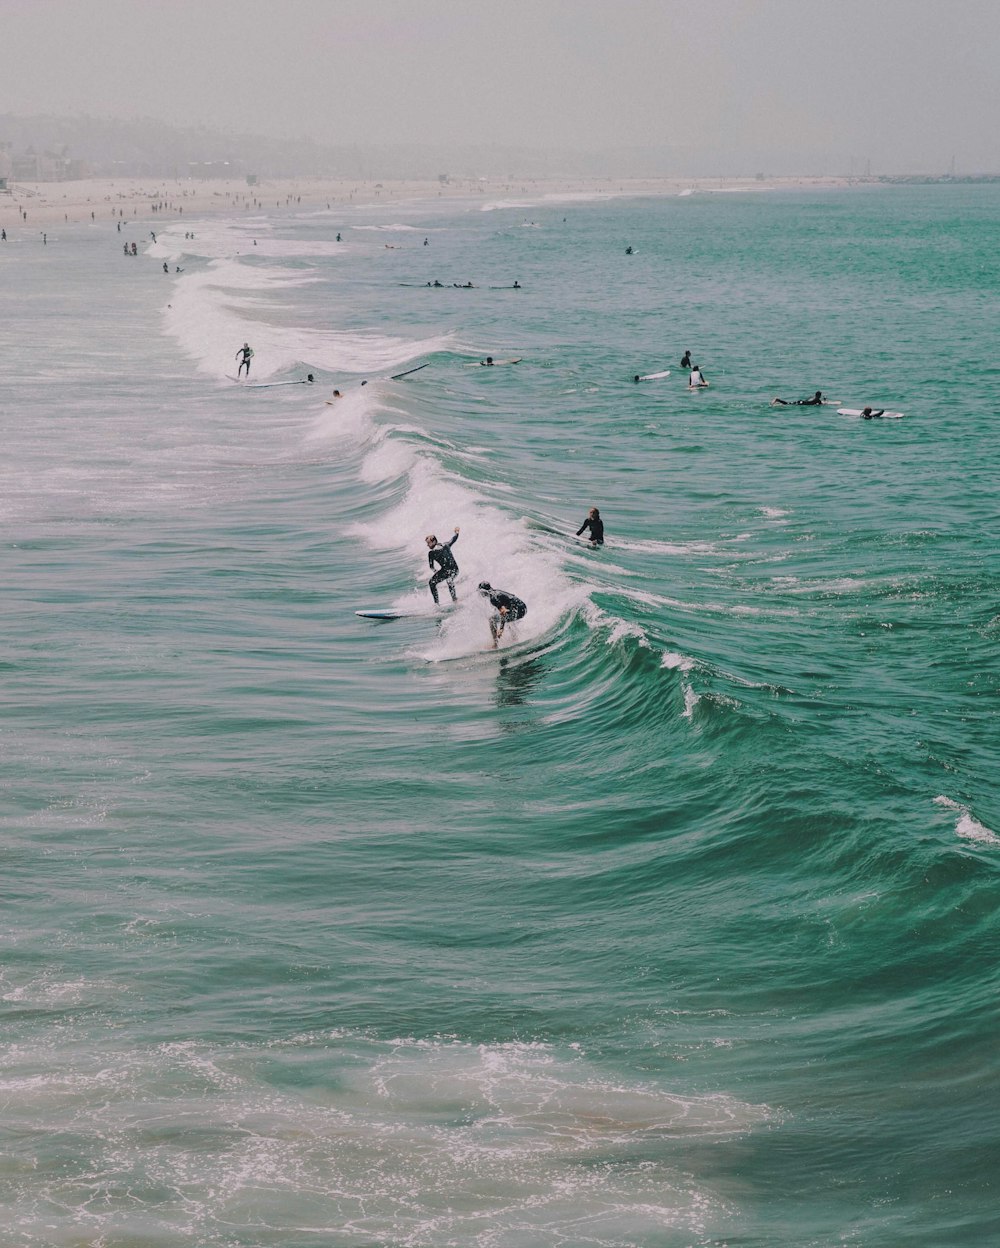 people surfing on ocean waves